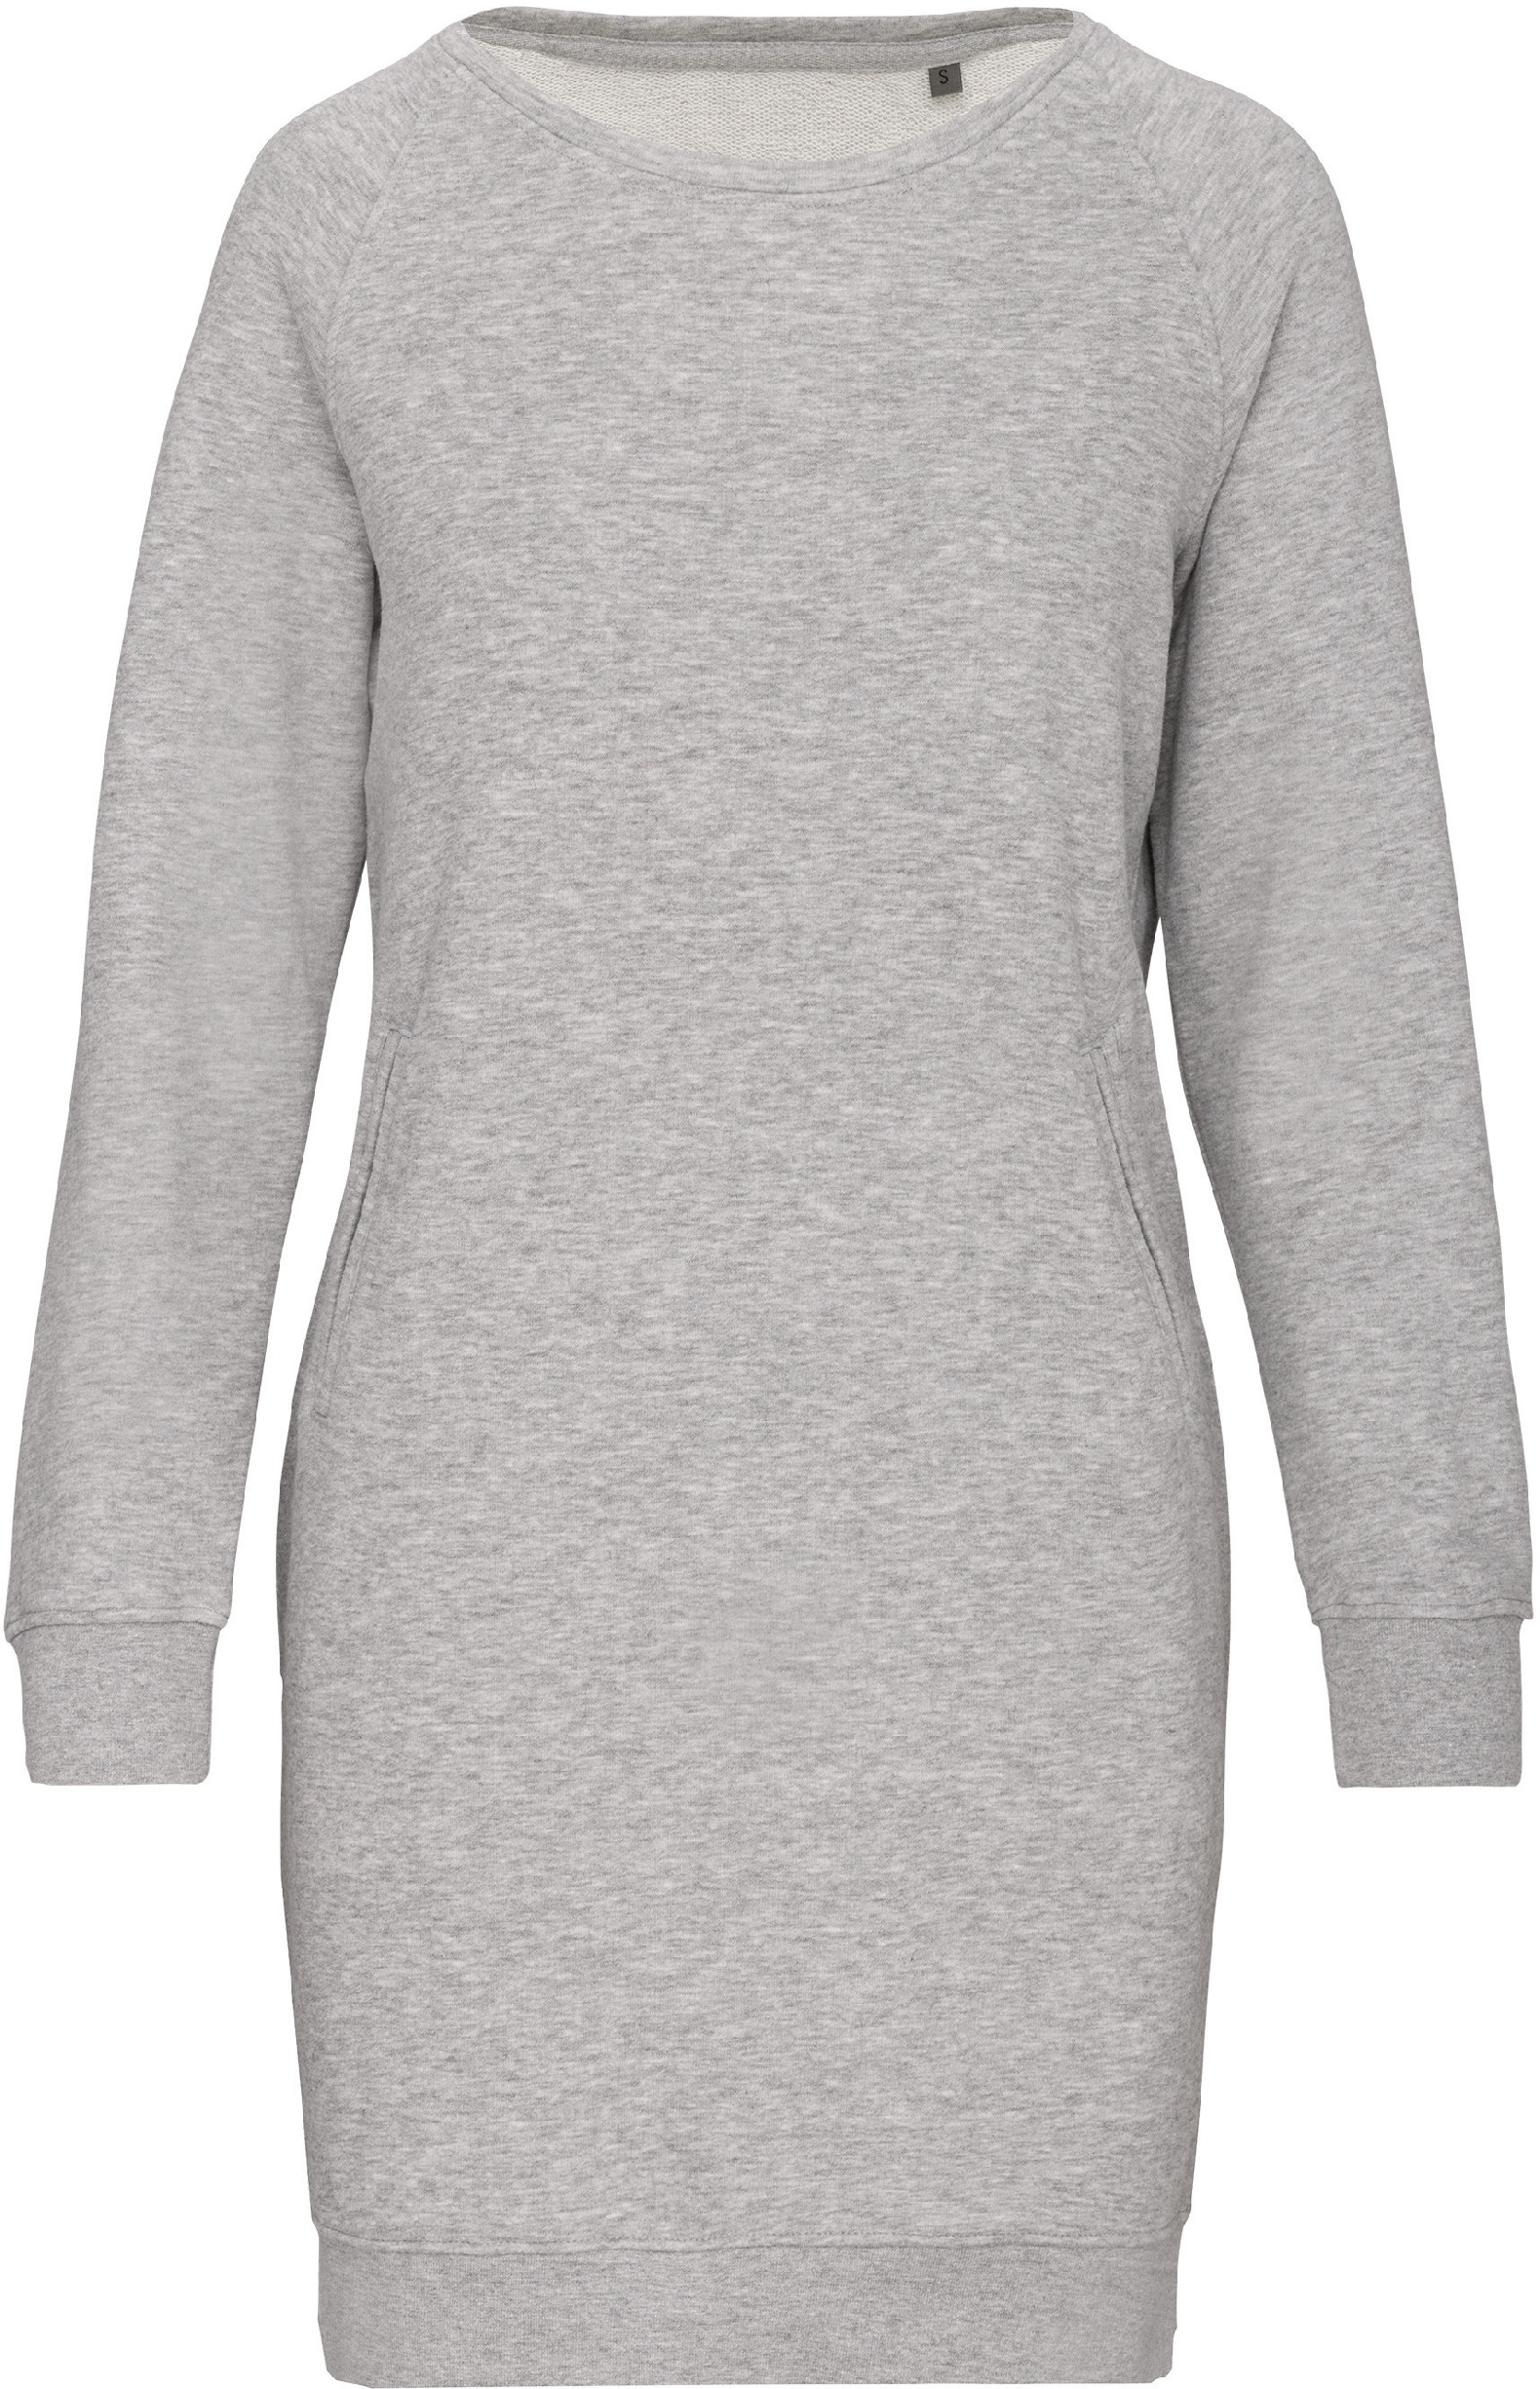 Dámské mikinové šaty K493 Barva: světle šedý melír, Velikost: L